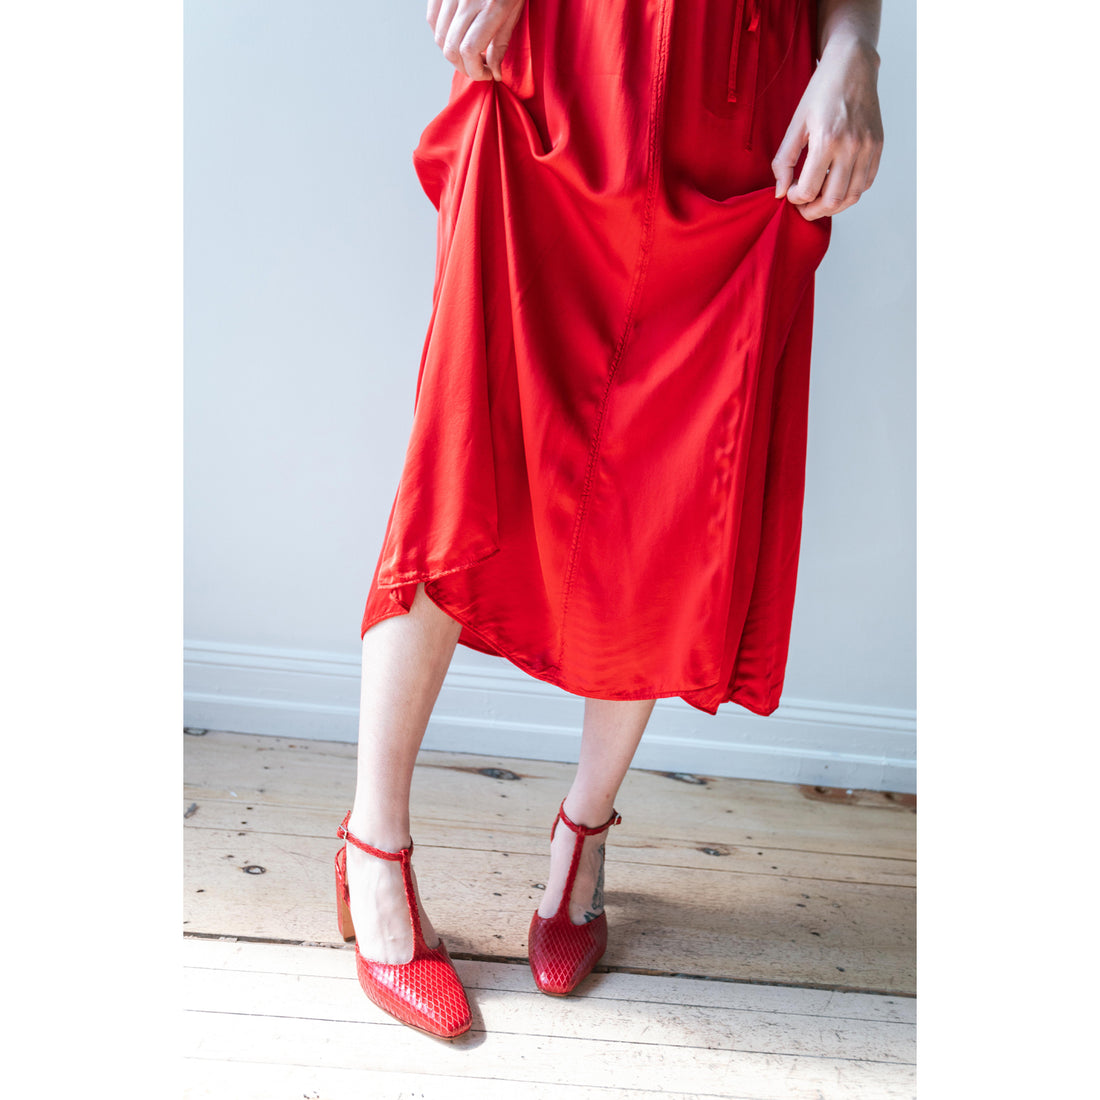 Rachel Comey Daemon Heel in Red